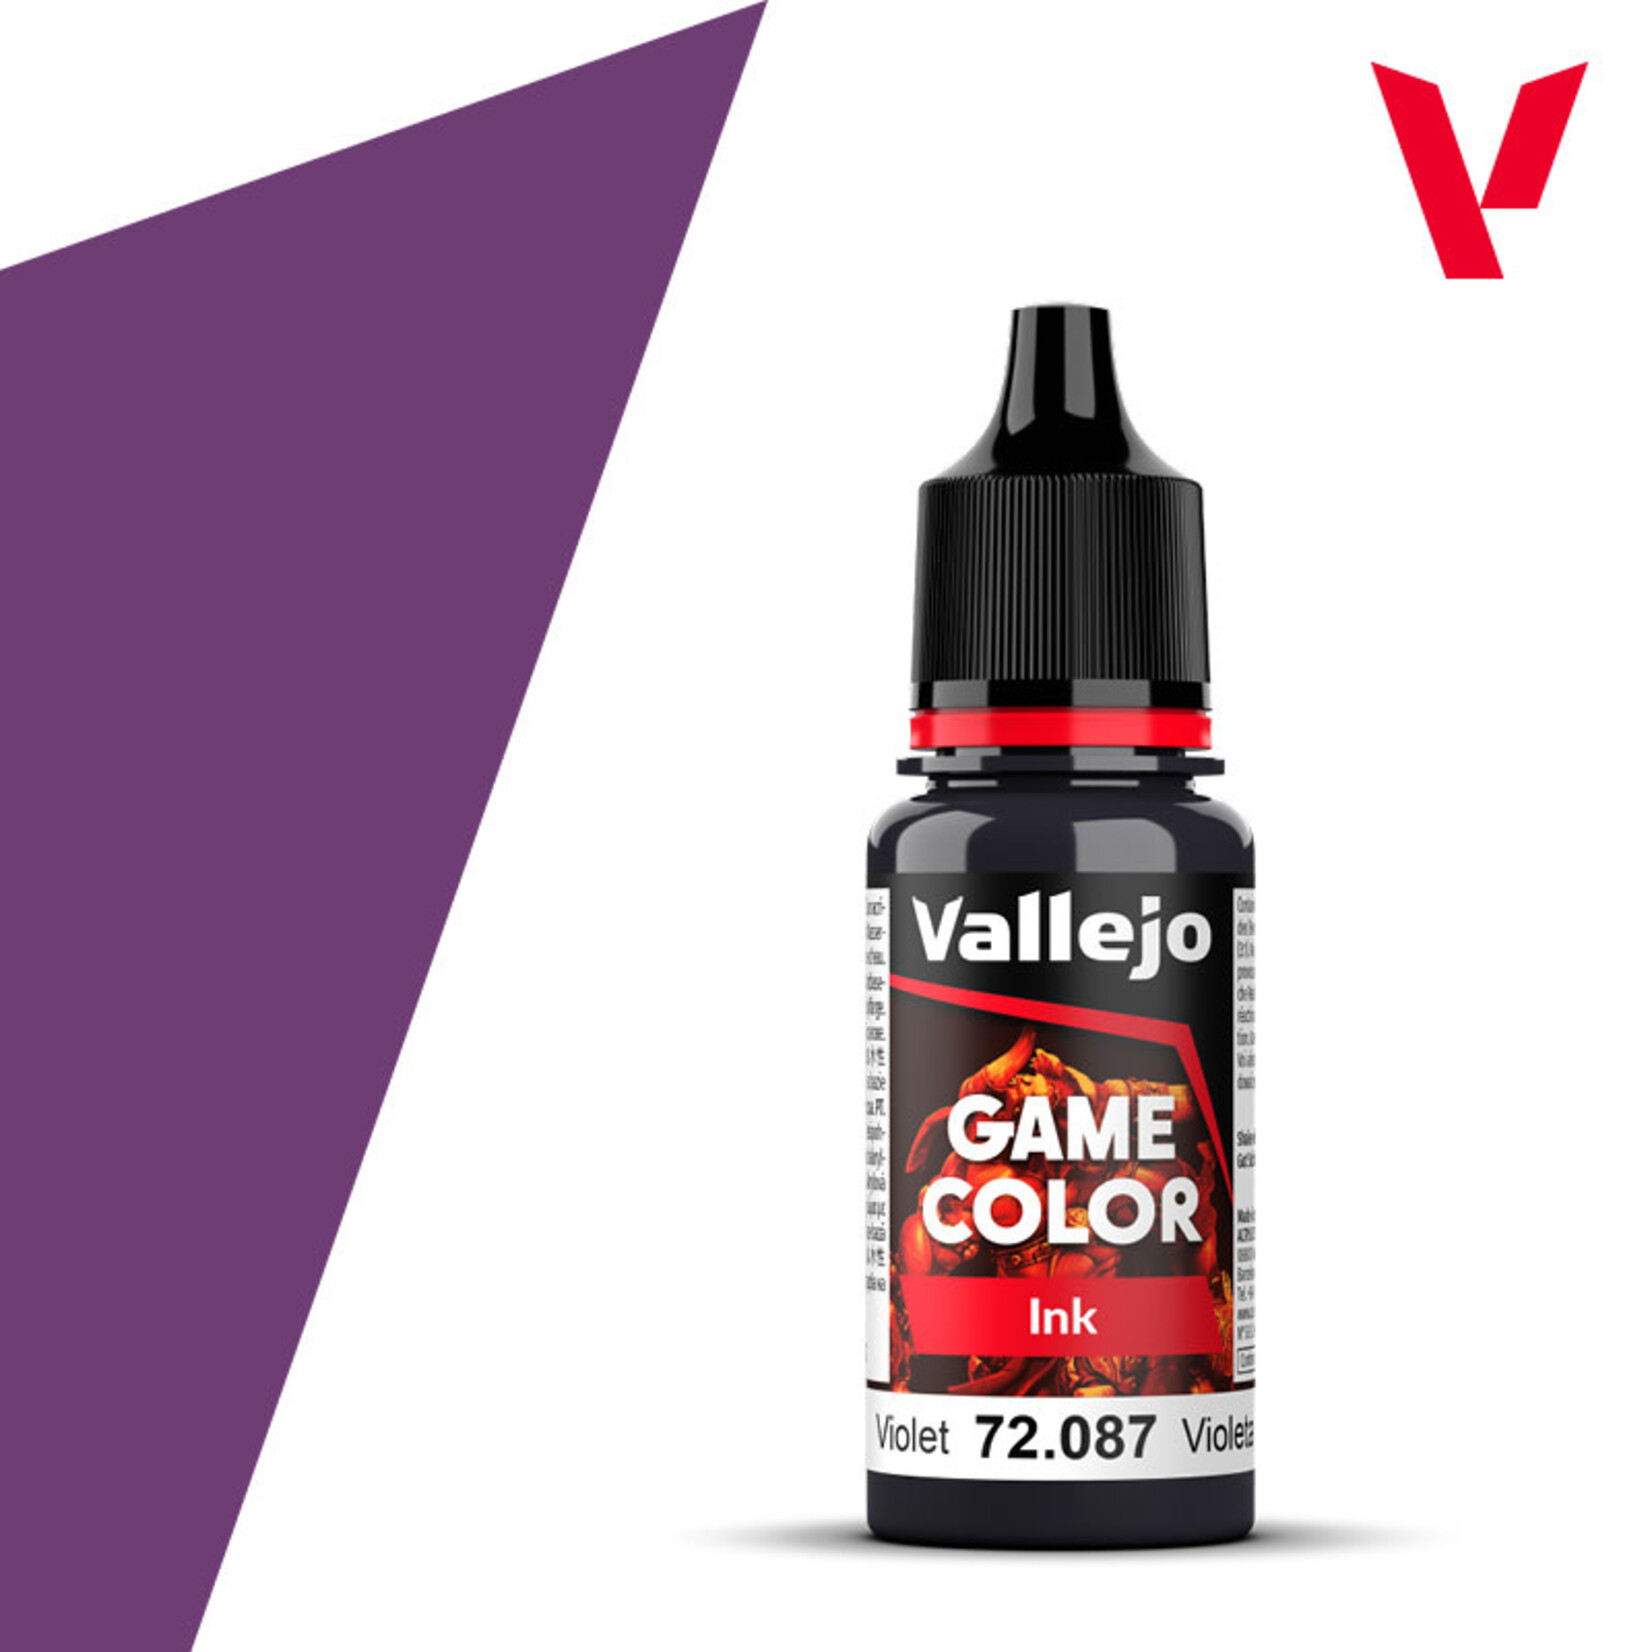 Vallejo Game Color Ink Violet